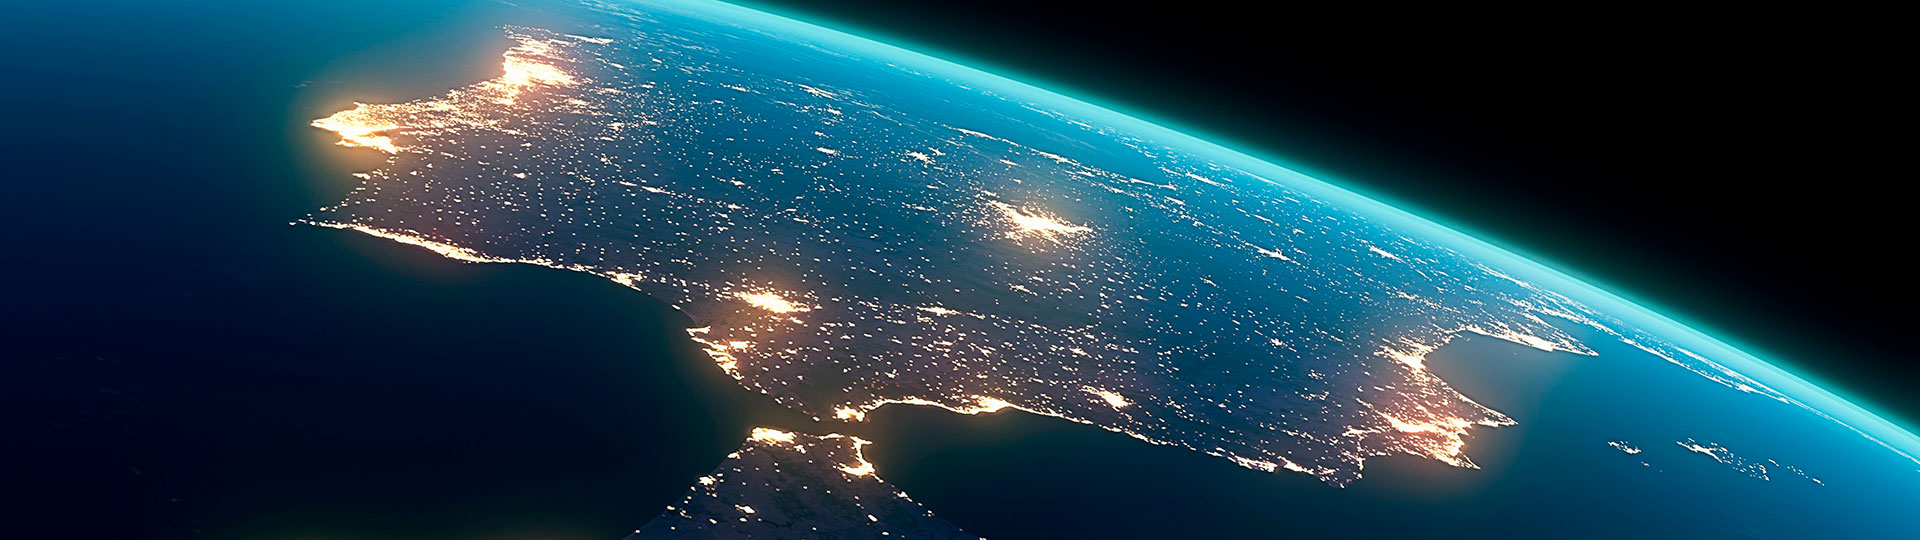 Het Iberisch schiereiland vanuit de ruimte